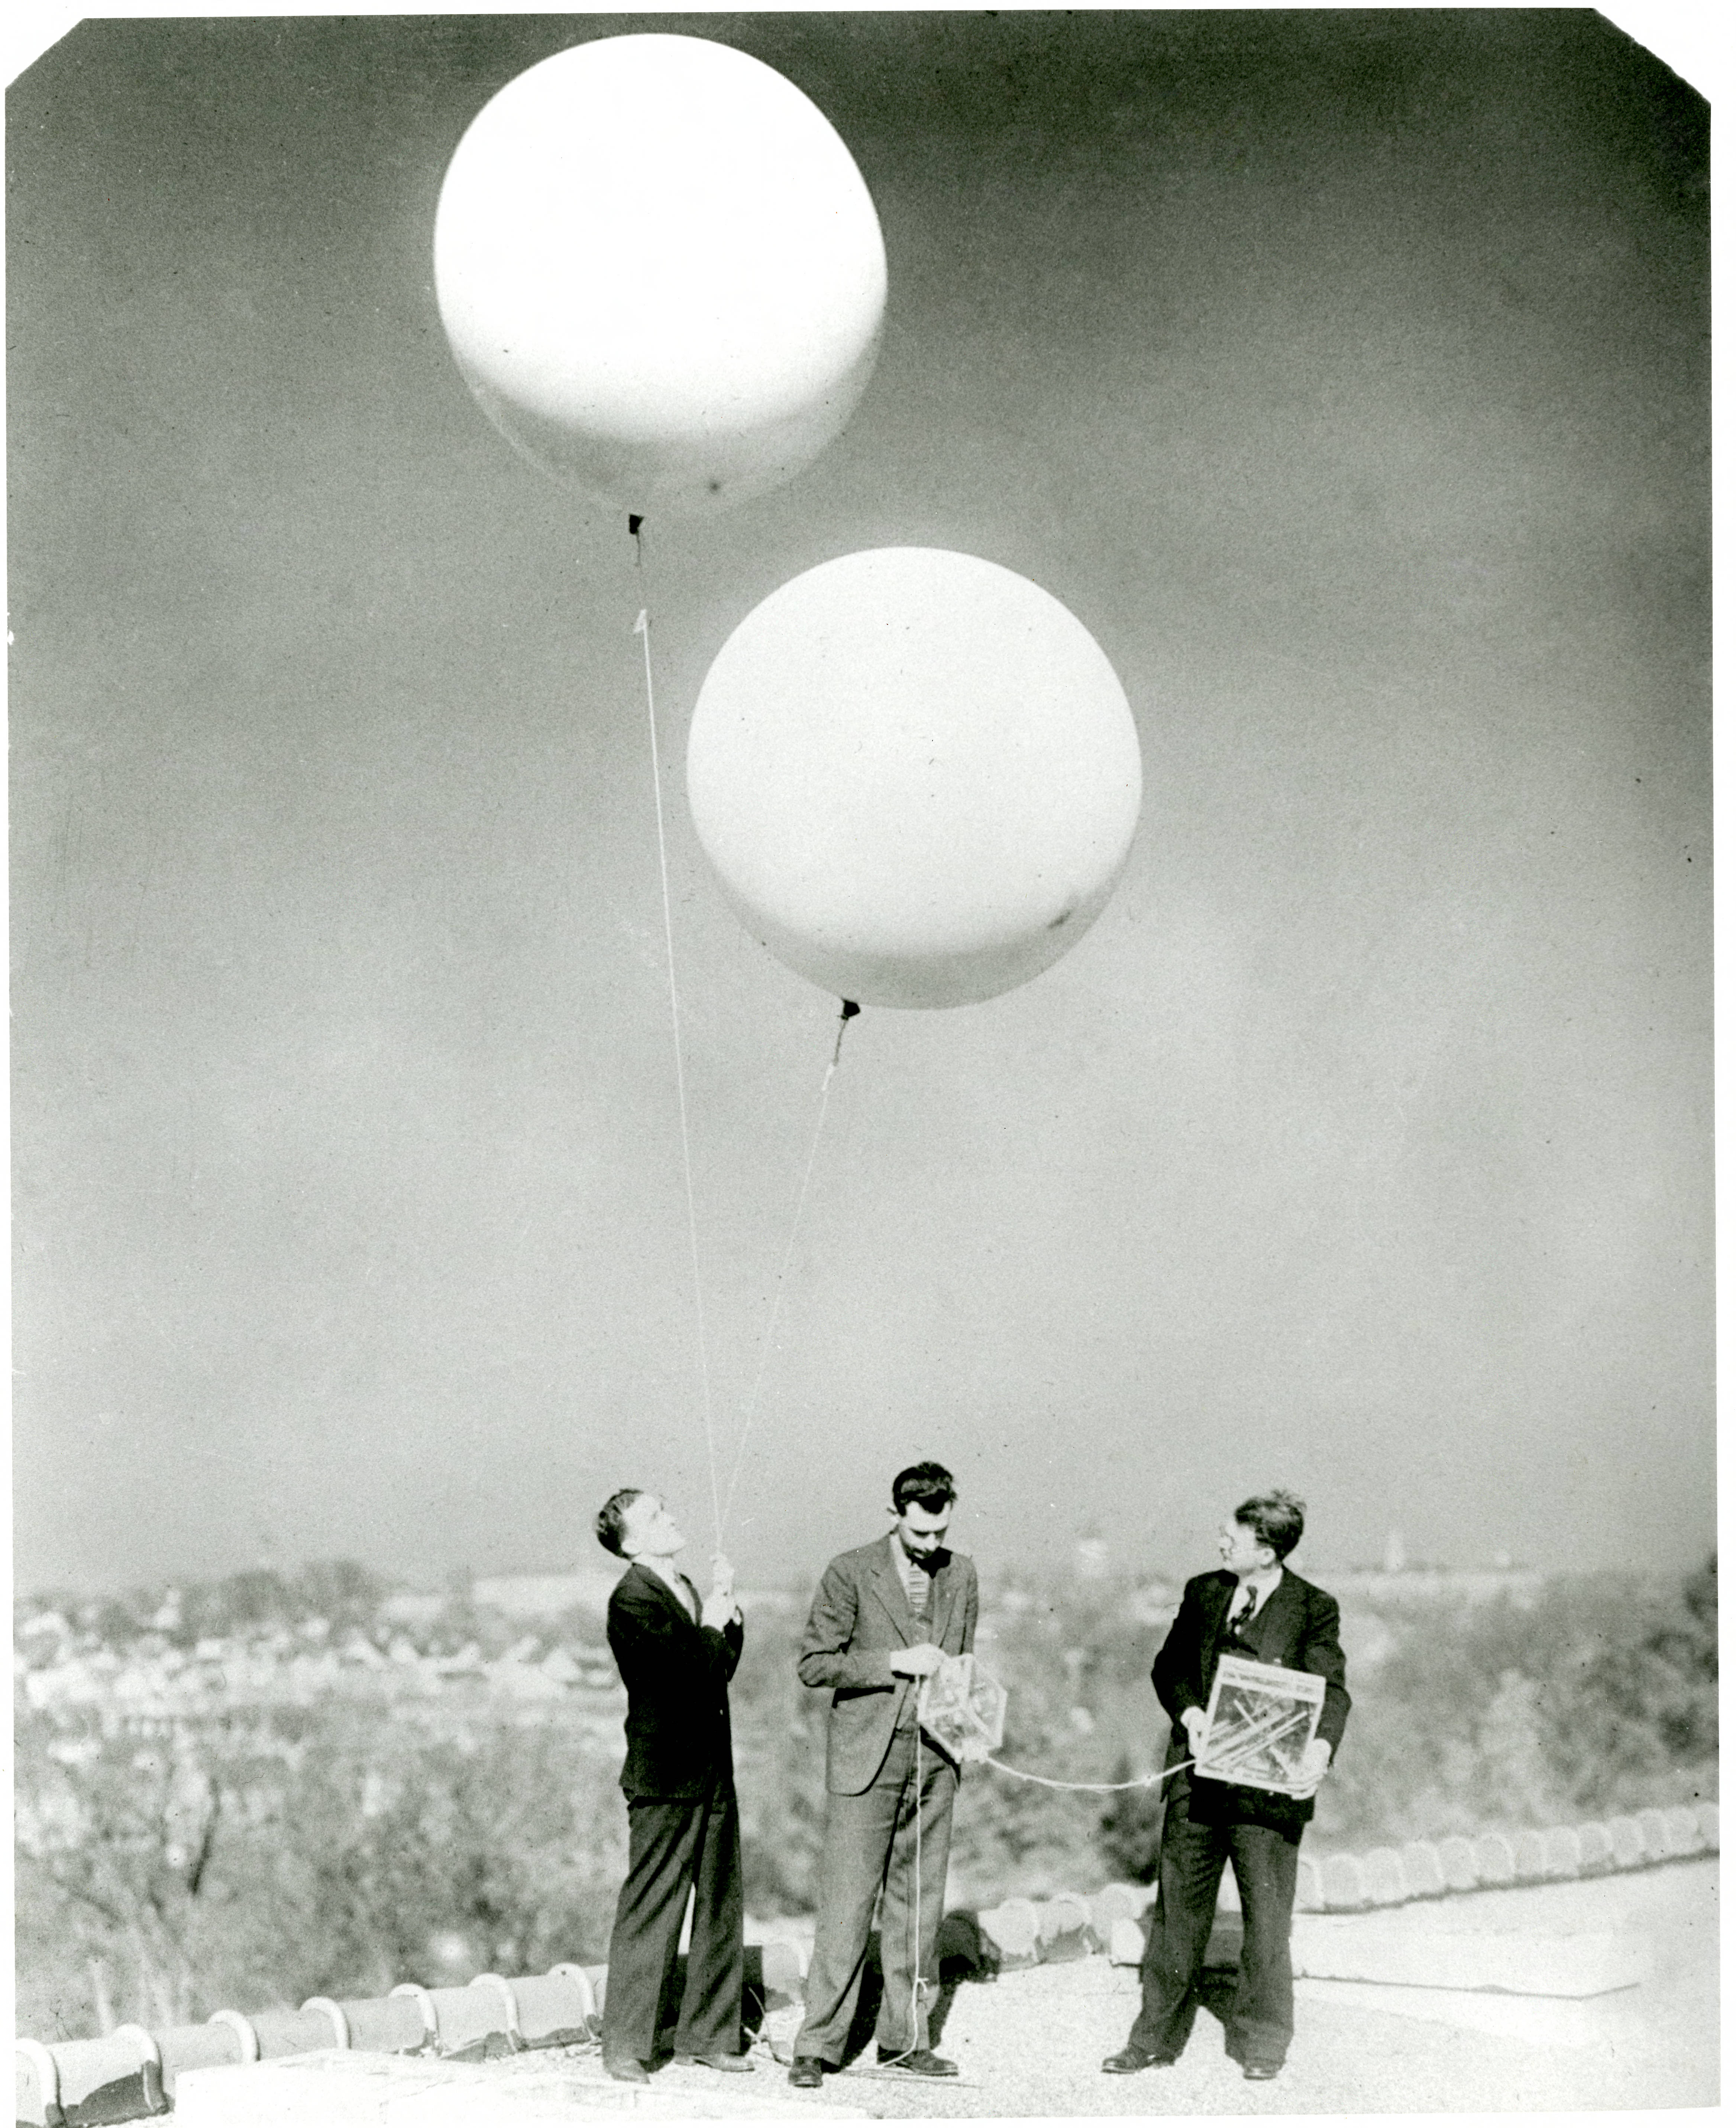 NBS Radiosonde Balloon Launch